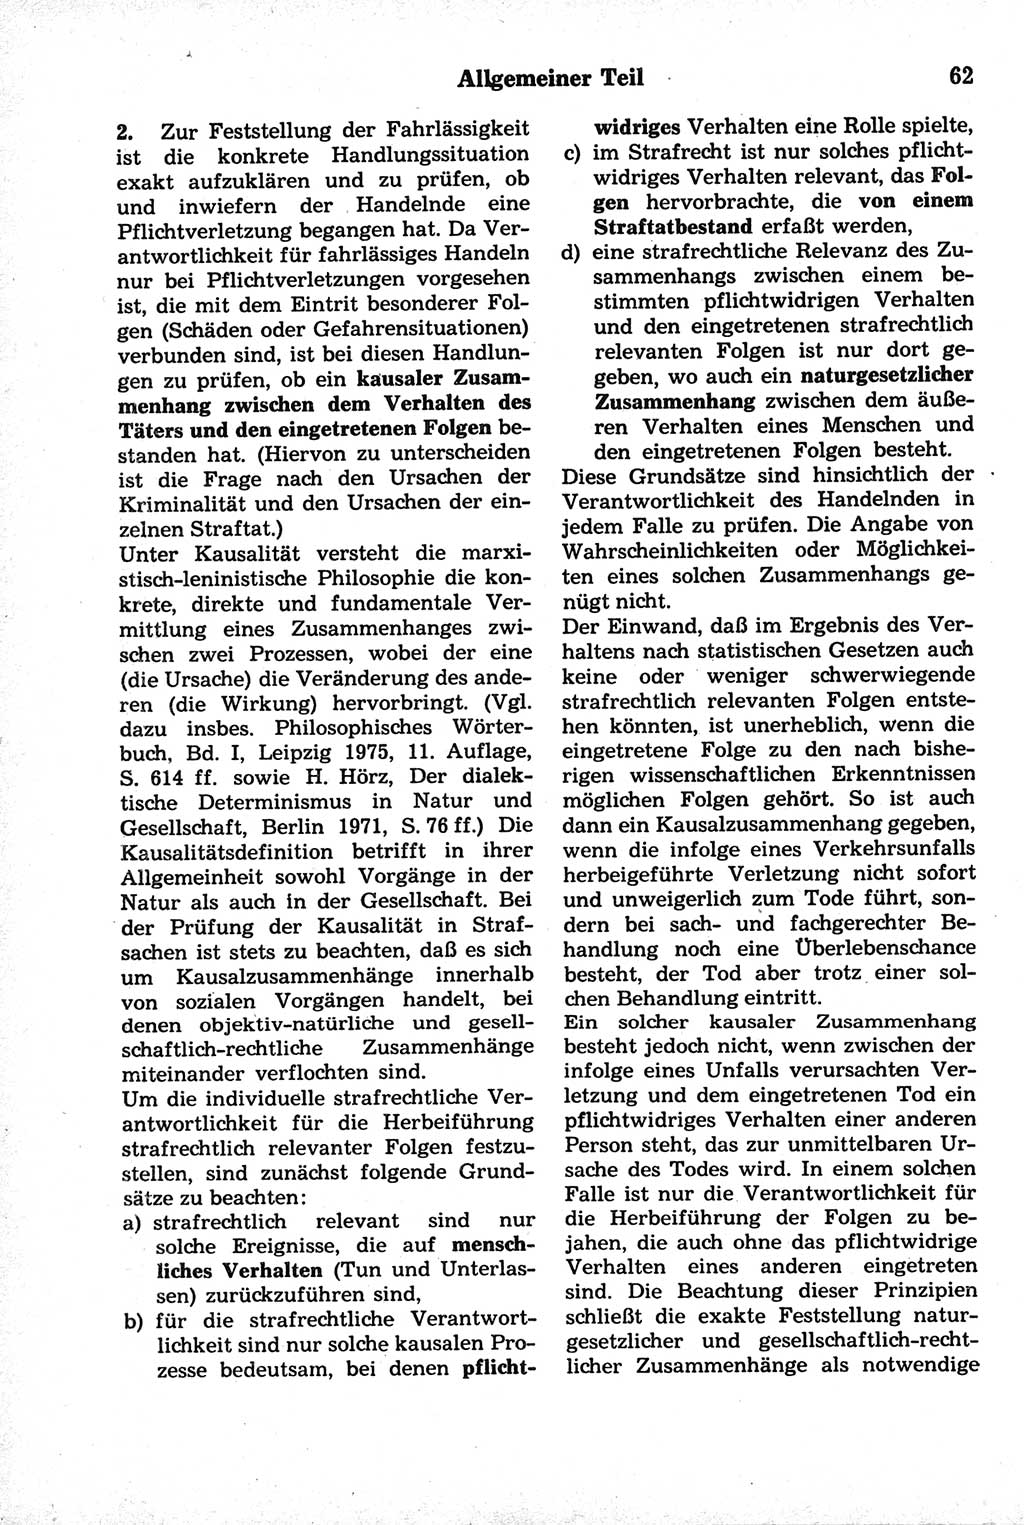 Strafrecht der Deutschen Demokratischen Republik (DDR), Kommentar zum Strafgesetzbuch (StGB) 1981, Seite 62 (Strafr. DDR Komm. StGB 1981, S. 62)